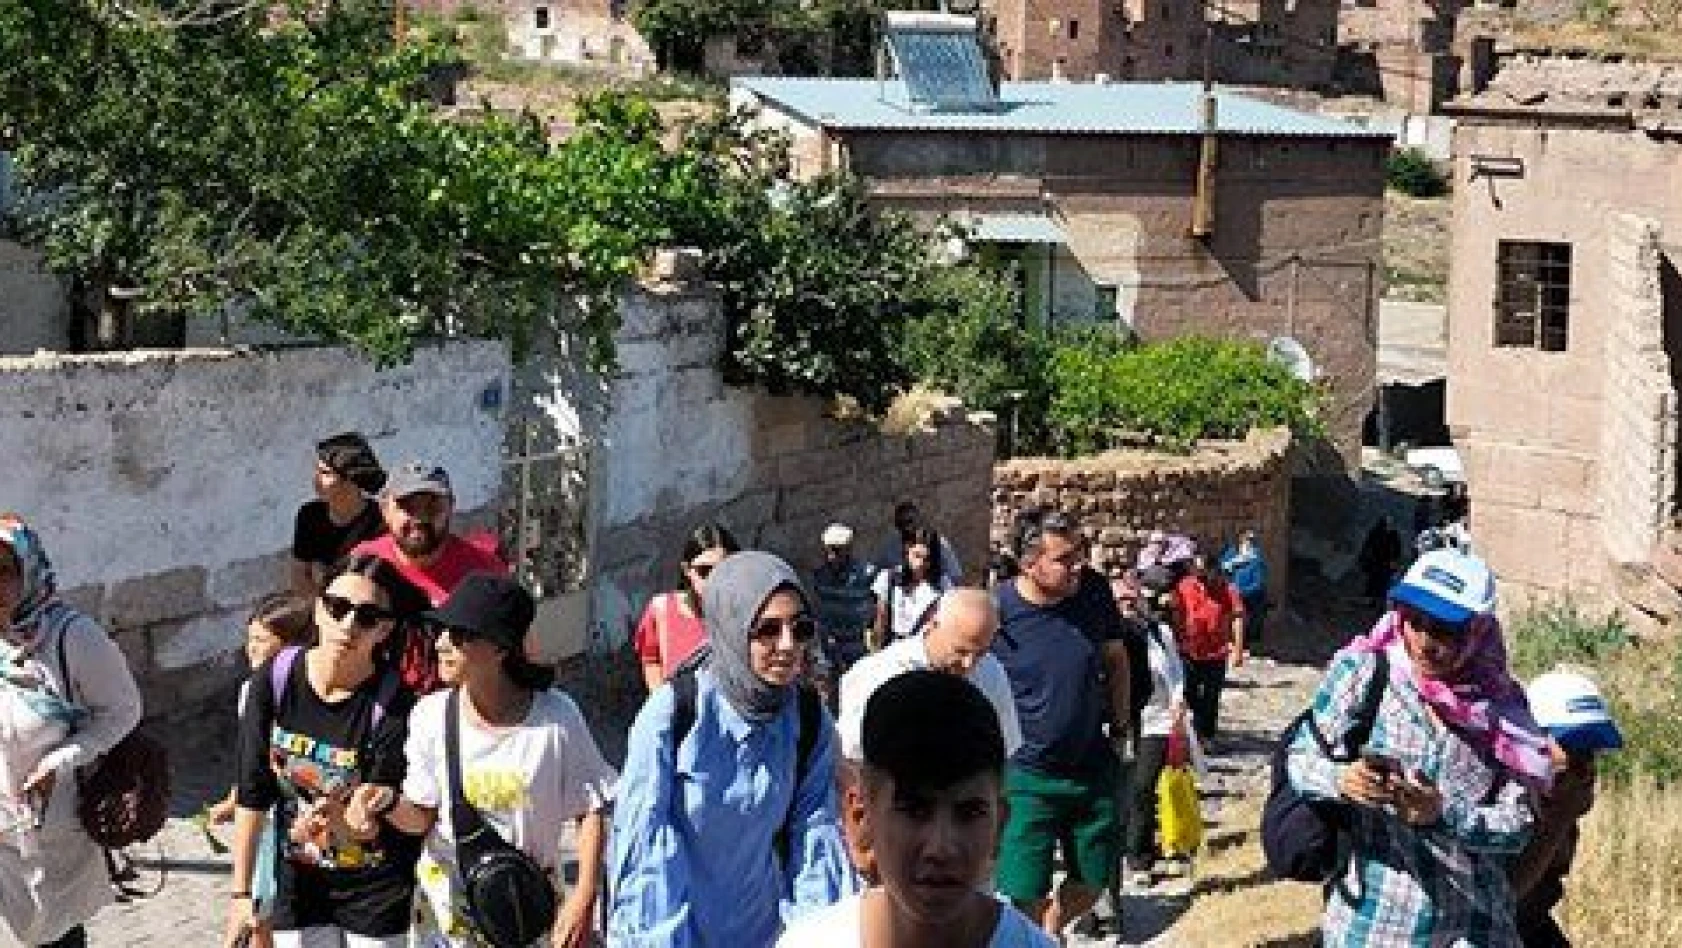 Büyükşehir'in kültür turları, gurbetçilere Kayseri'yi tanıtıyor